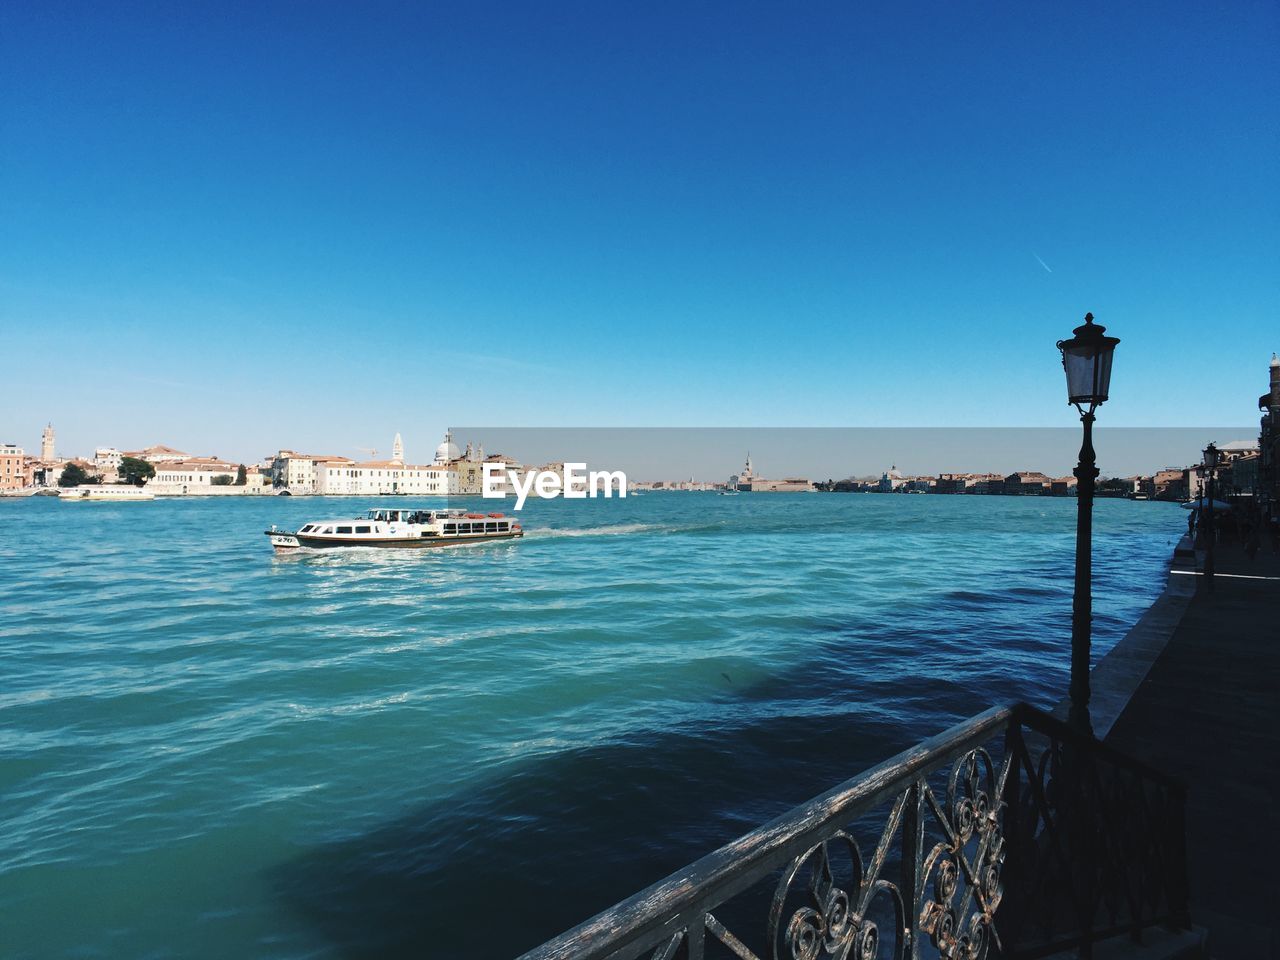 Venice city skyline and giudecca canal on a sunny day, clear and blue sky 